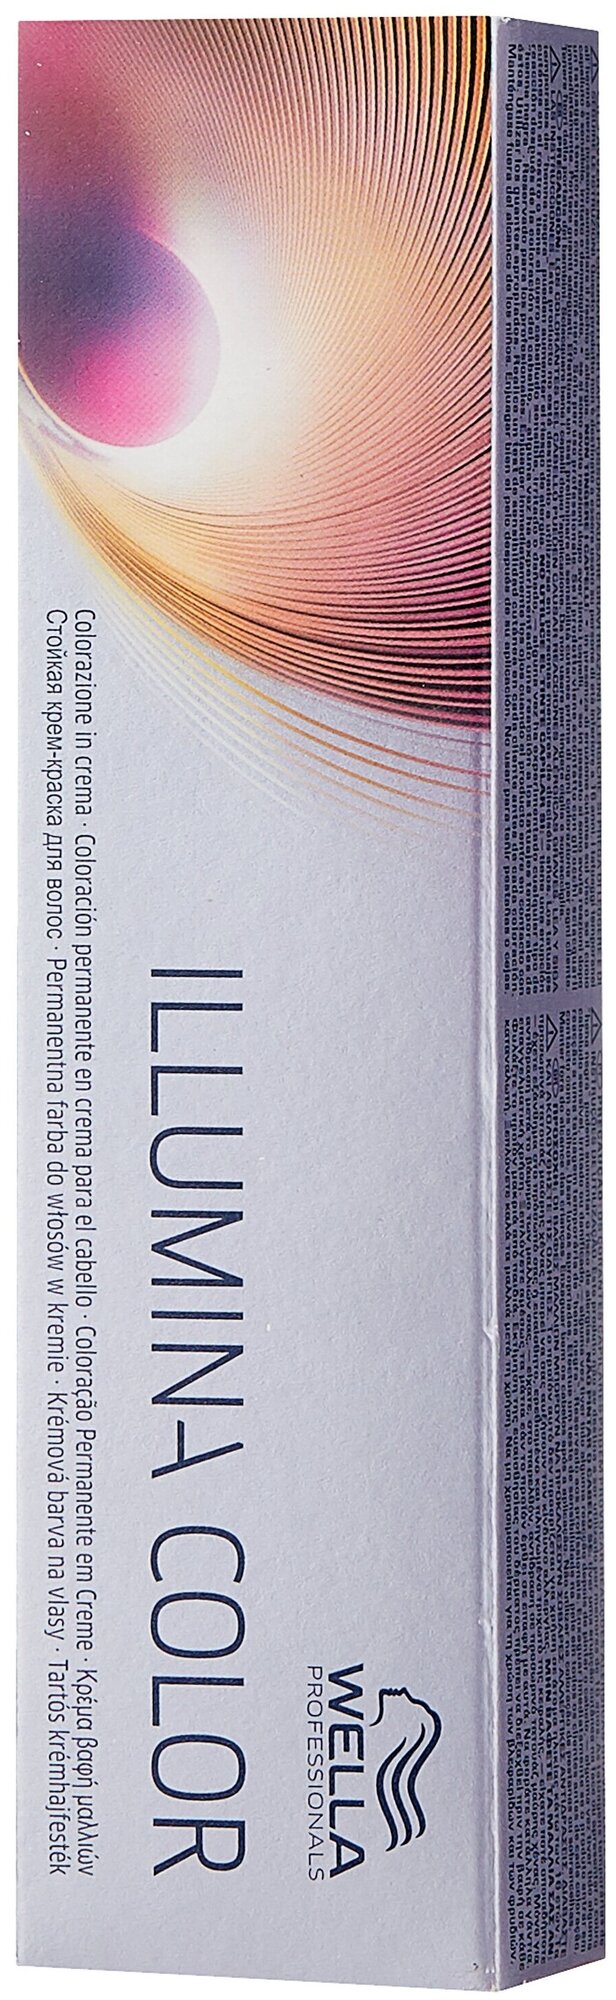 Wella Professionals Illumina Color стойкая крем-краска для волос, 10/38 яркий блонд золотисто-жемчужный, 60 мл